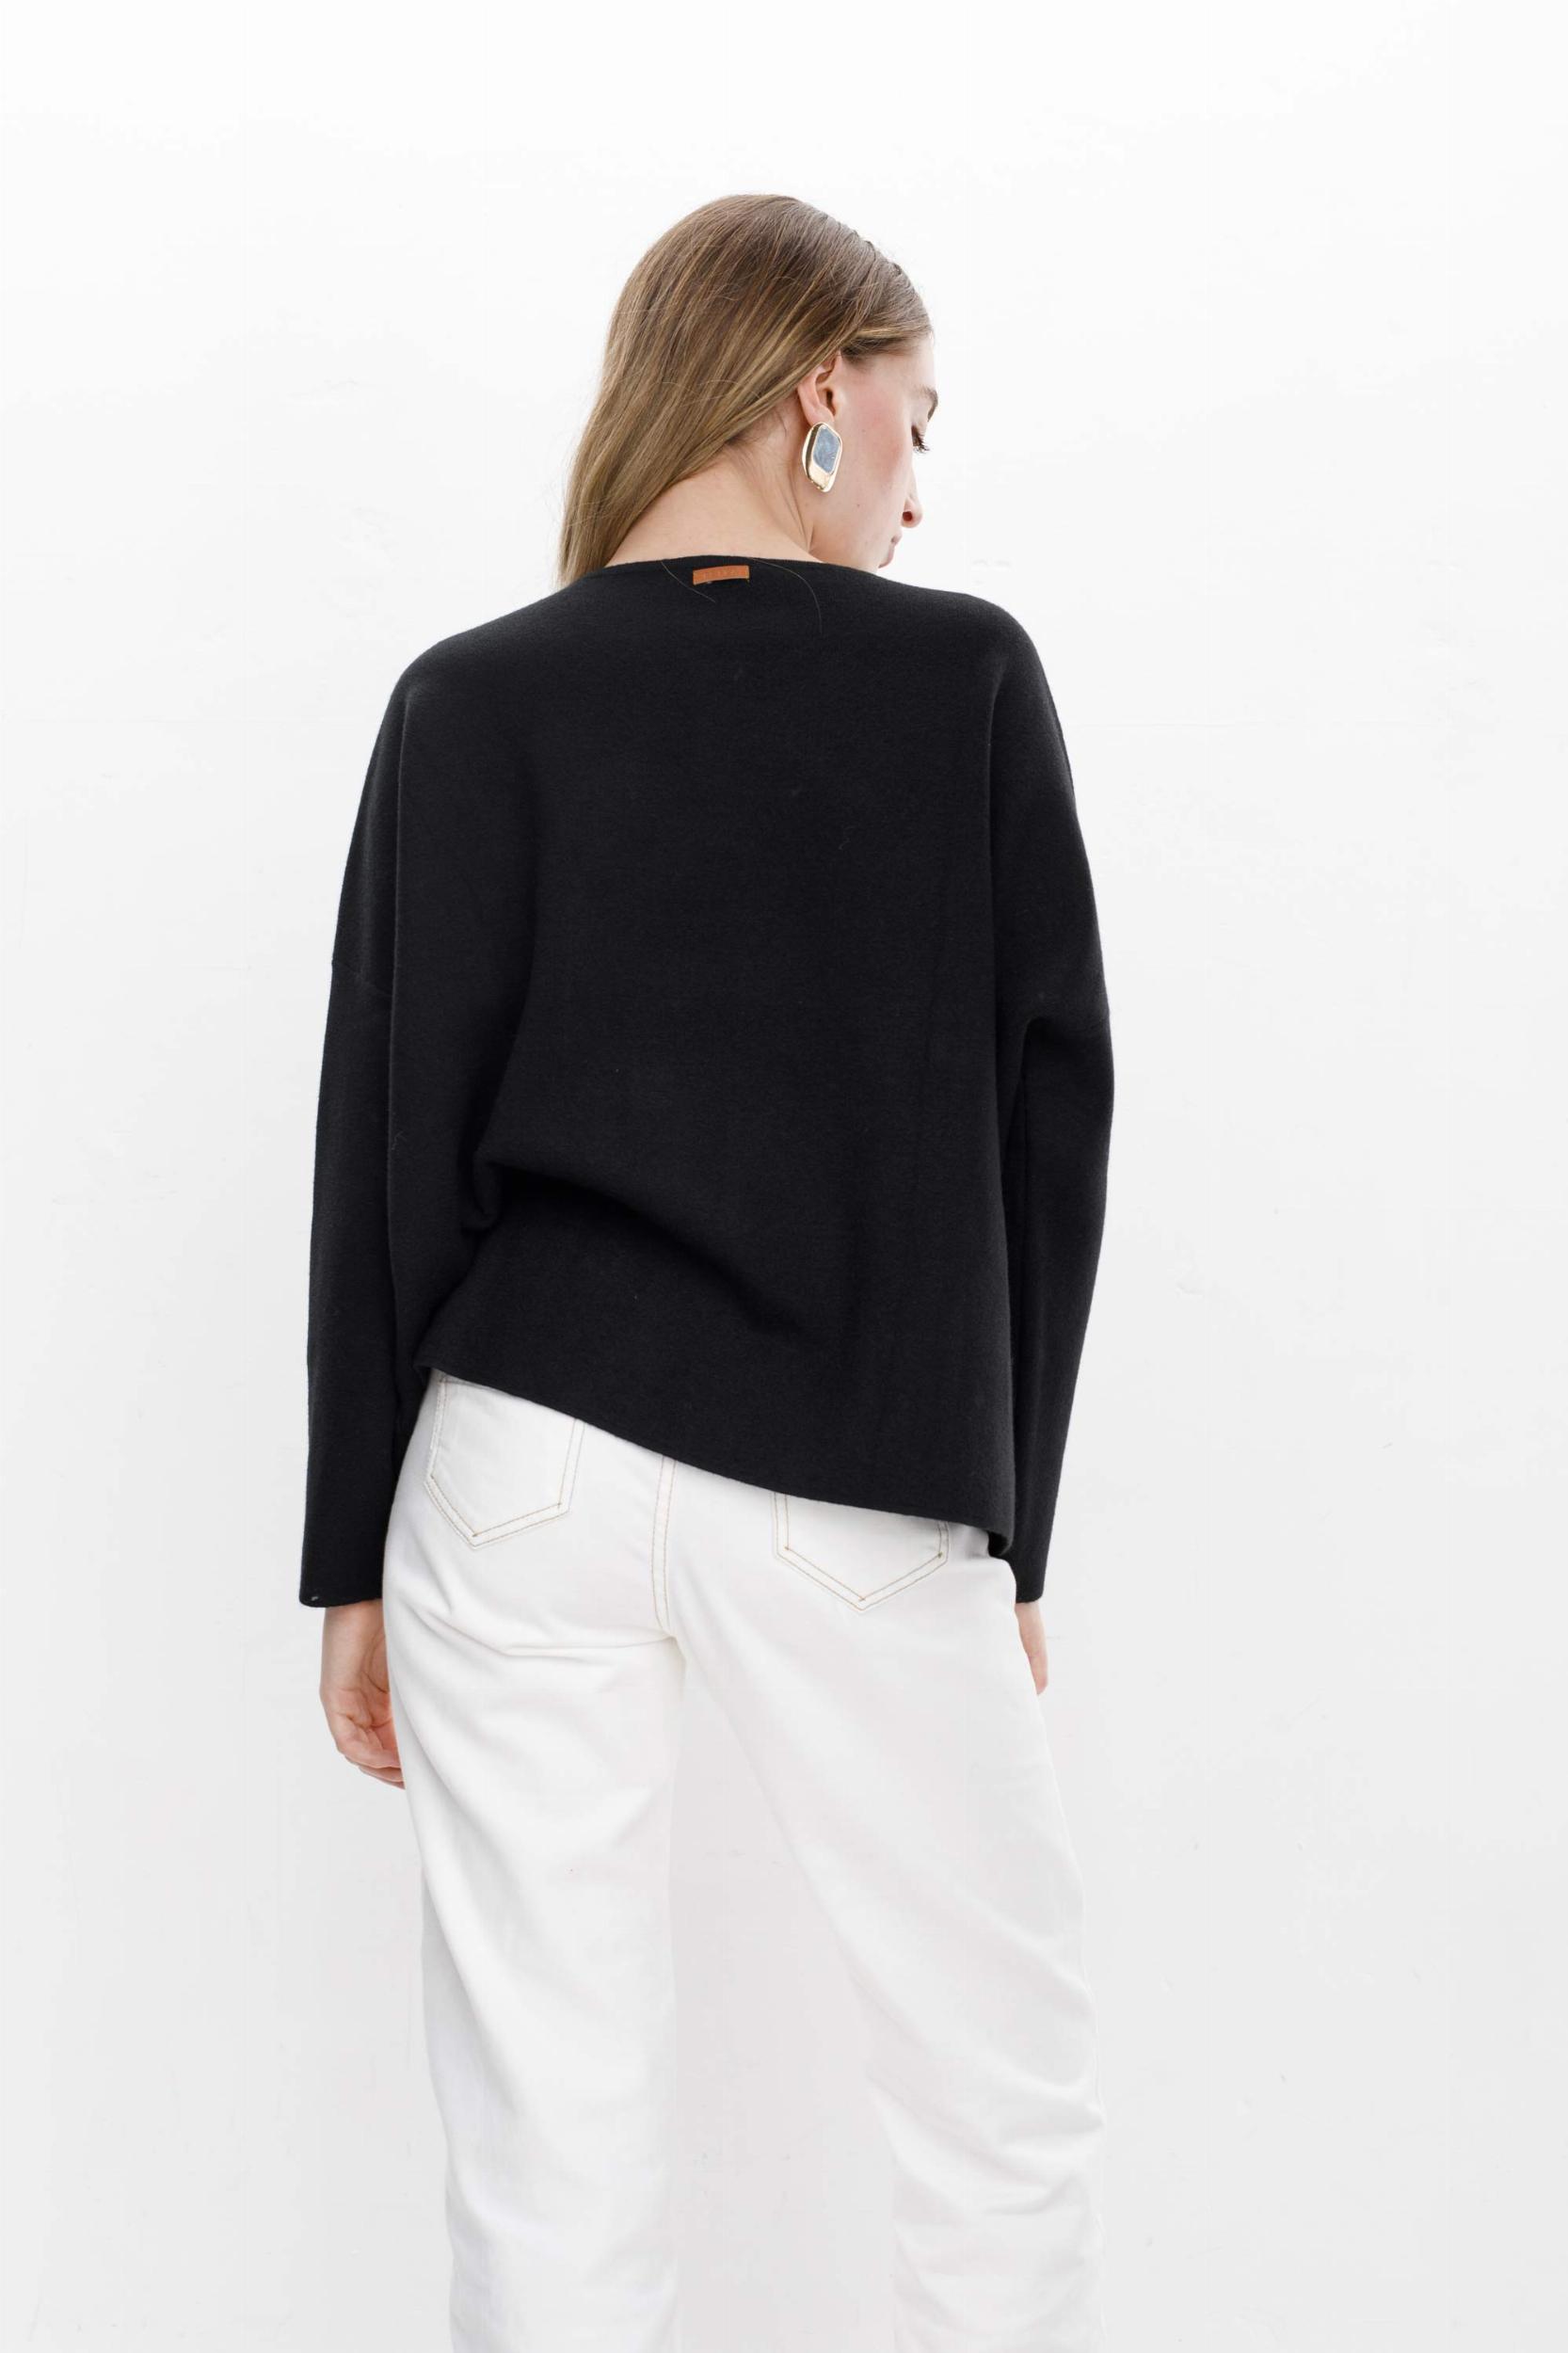 Sweater Manola negro talle unico